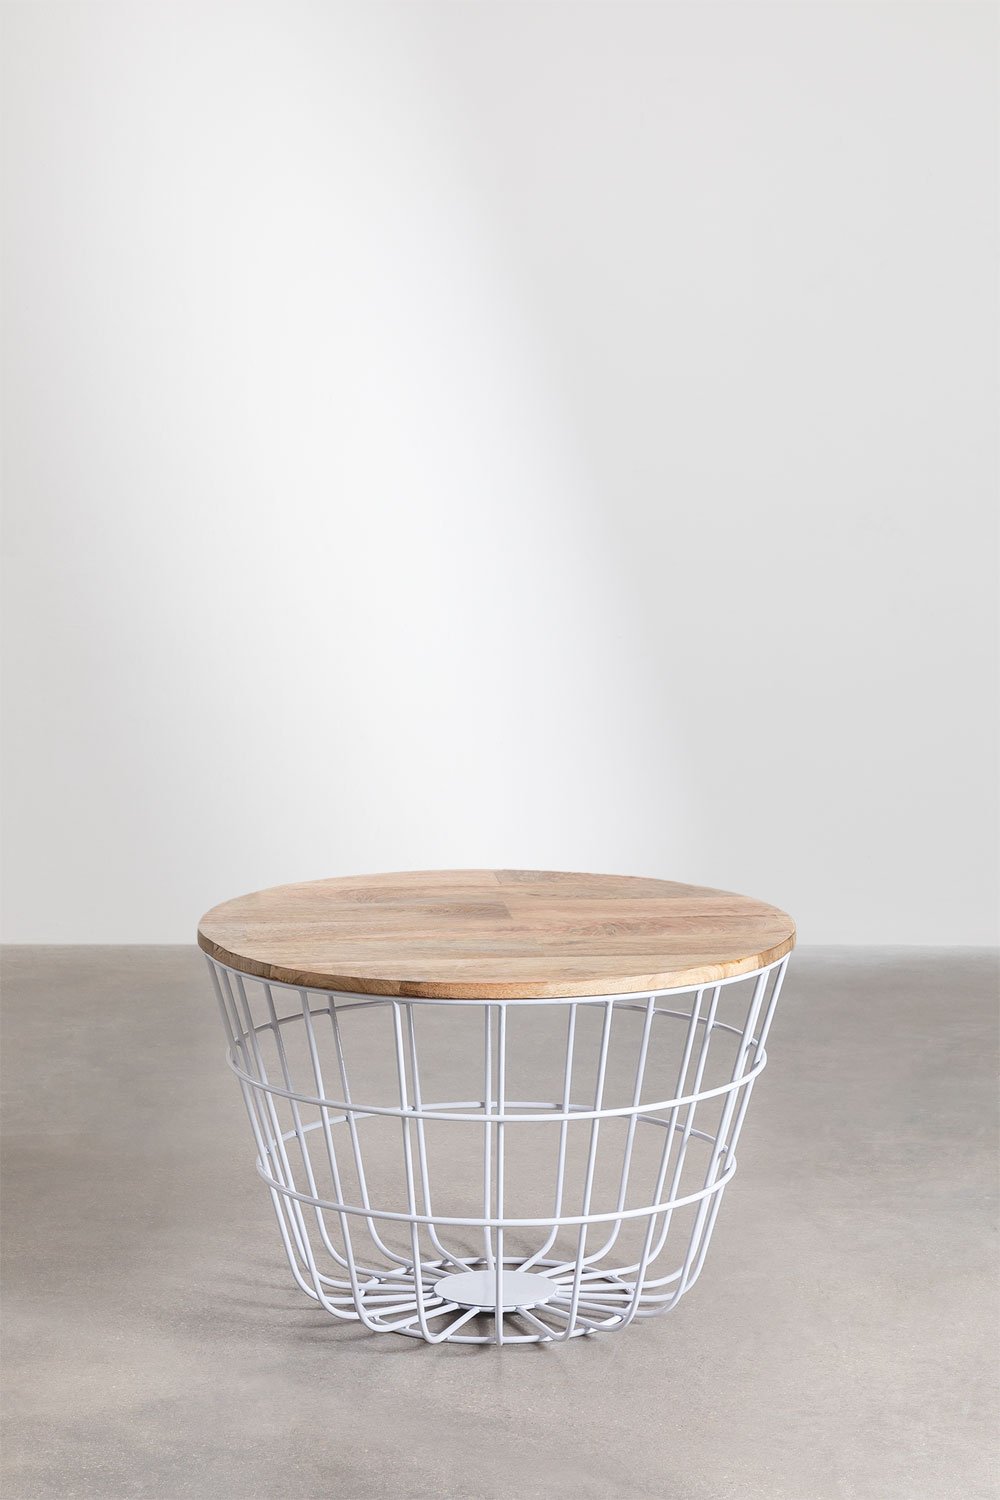 Tavolino rotondo in legno di mango e acciaio (Ø62 cm) Ket, immagine della galleria 1